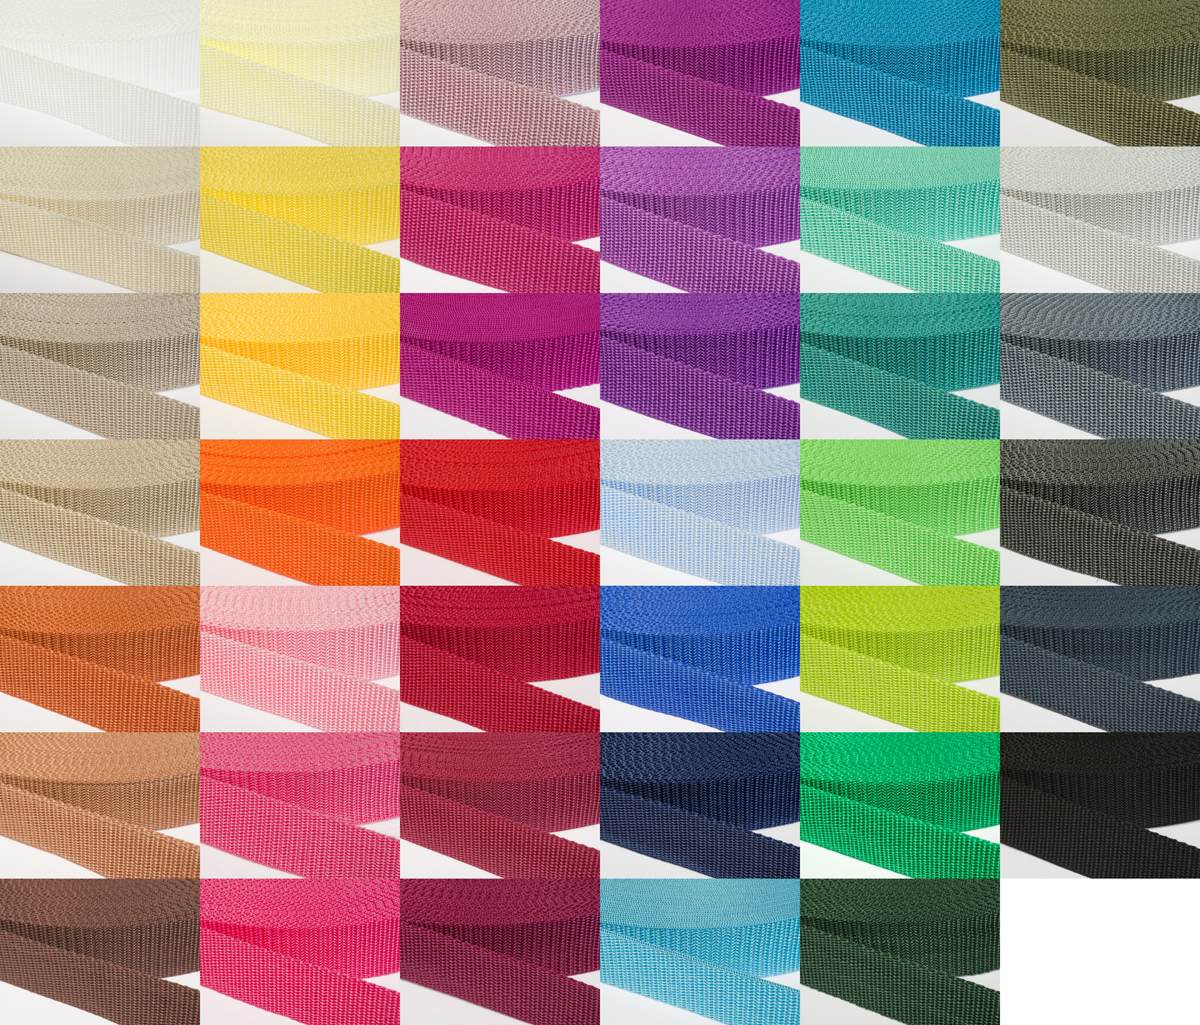 Gurtband 30mm breit aus Polypropylen in 41 Farben 03 - beige 12 Meter